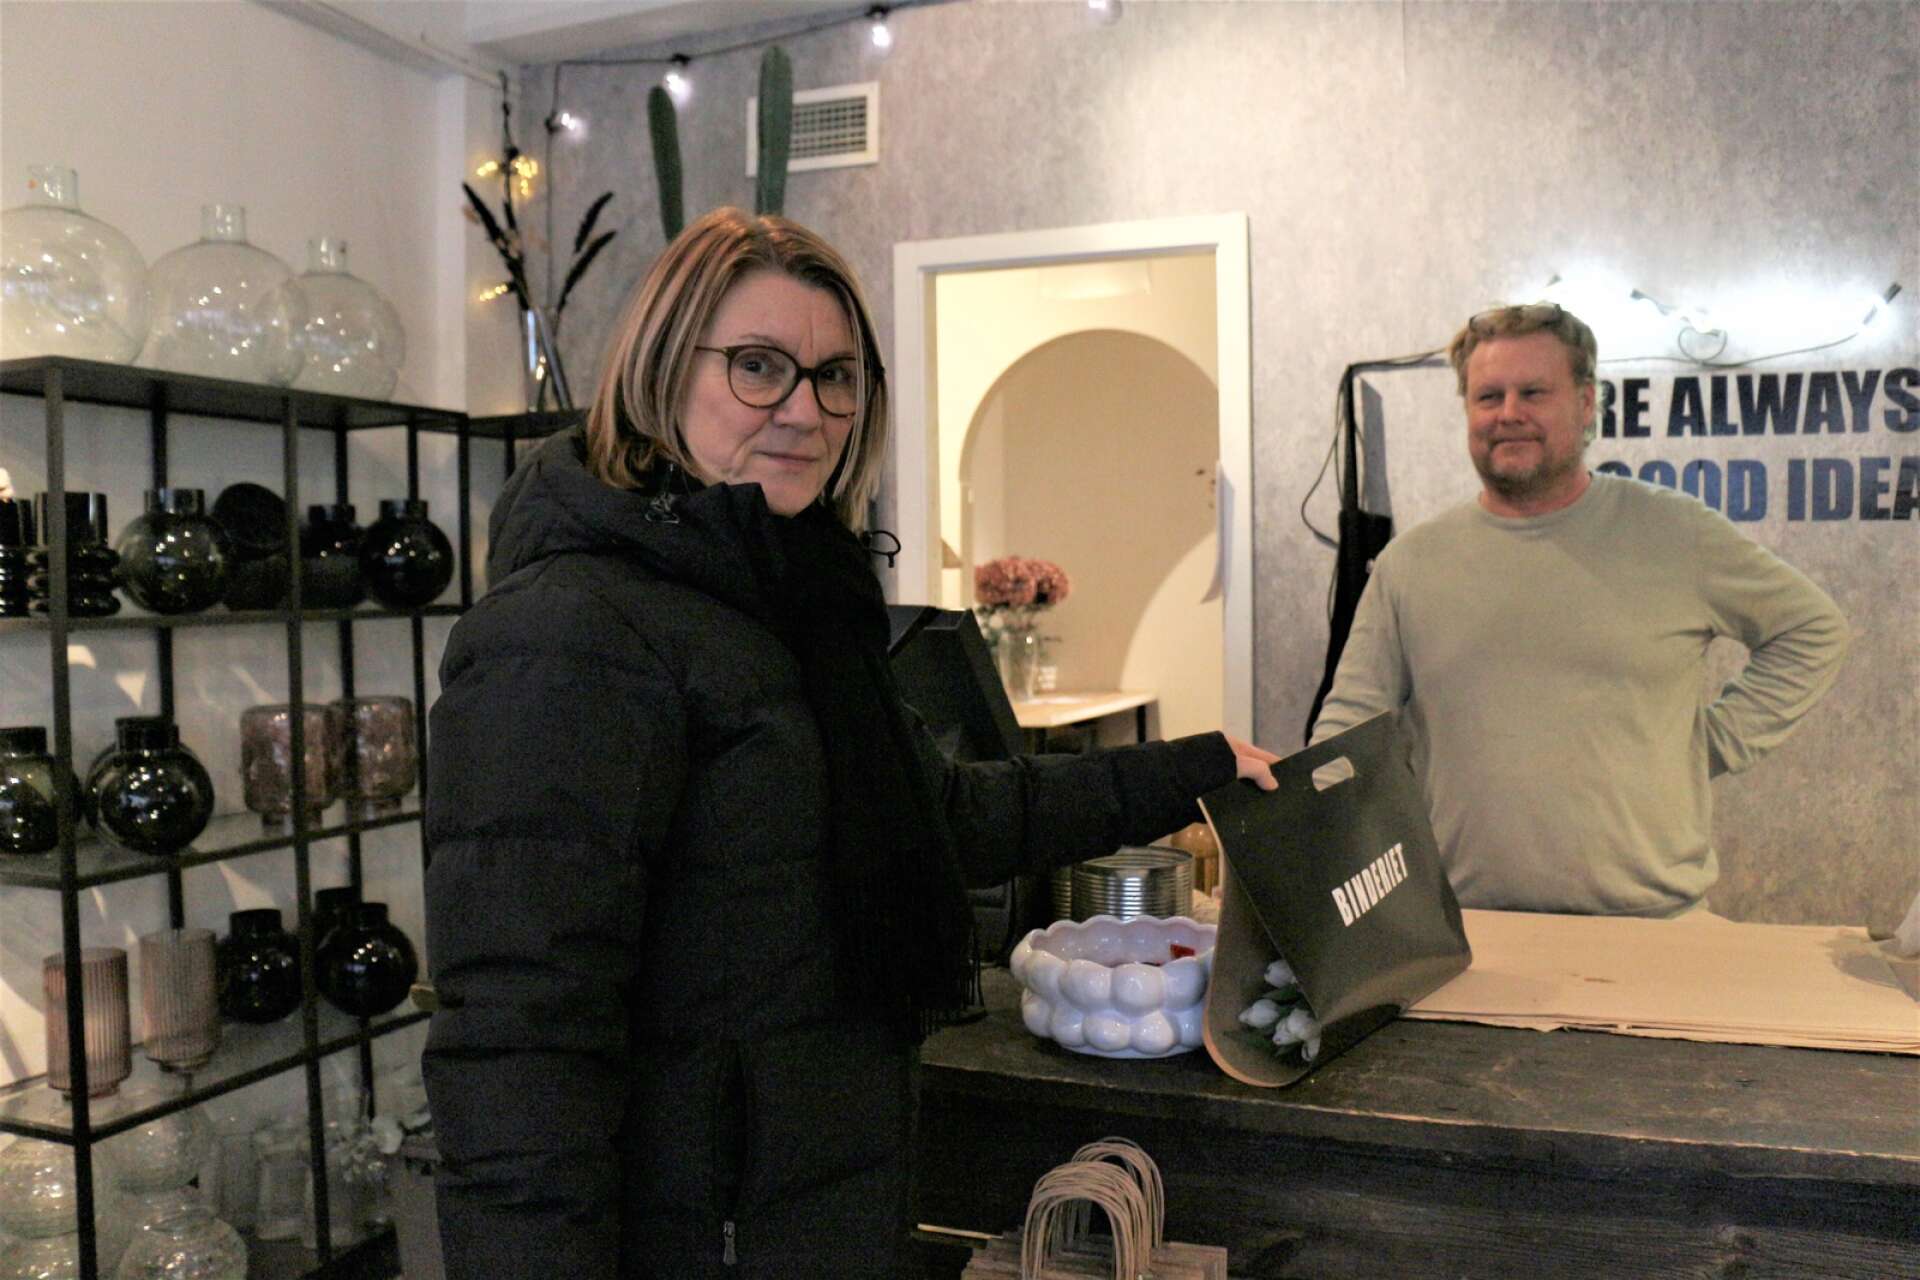 nette Lindqvist Persson köper en bukett tulpaner av Joakim Olsson på Binderiet.